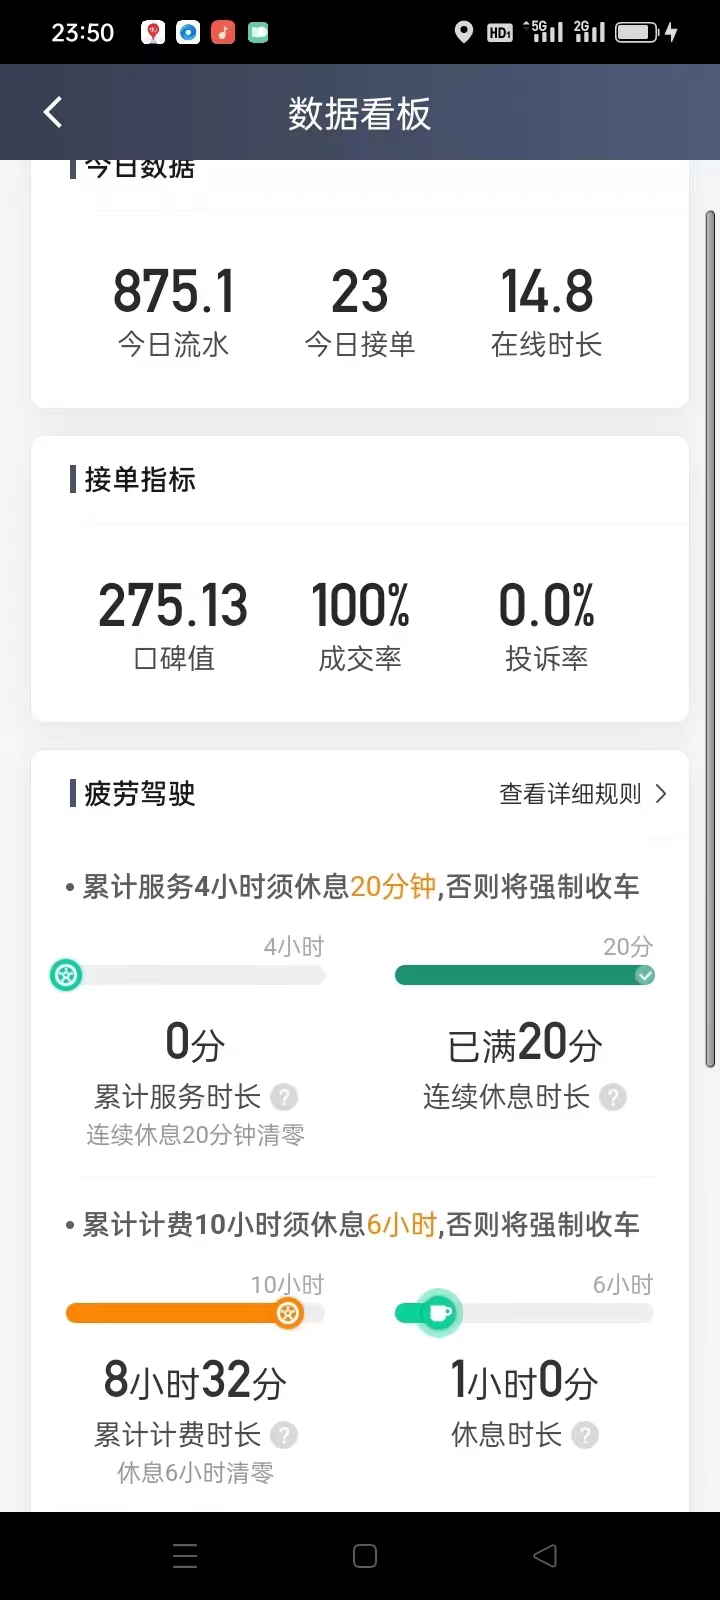 主变量上海网约车是起步价怎么样便民消息